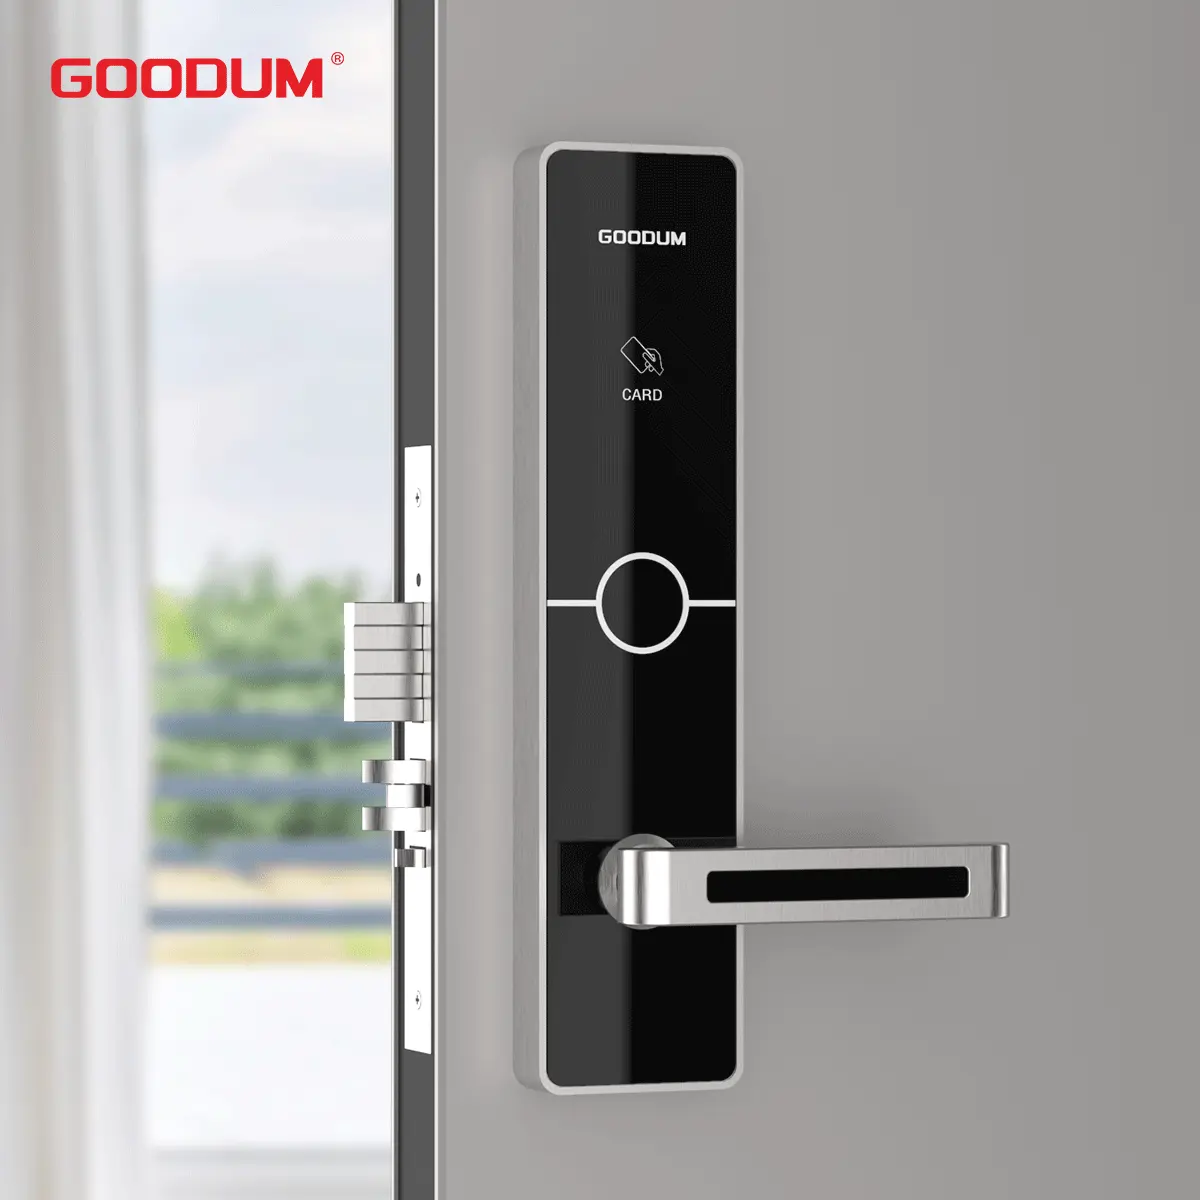 Goodum Hotel карта дверной замок PCB части RFID считыватель модуль для деревянной алюминиевой стальной двери ID карты система управления загрузкой